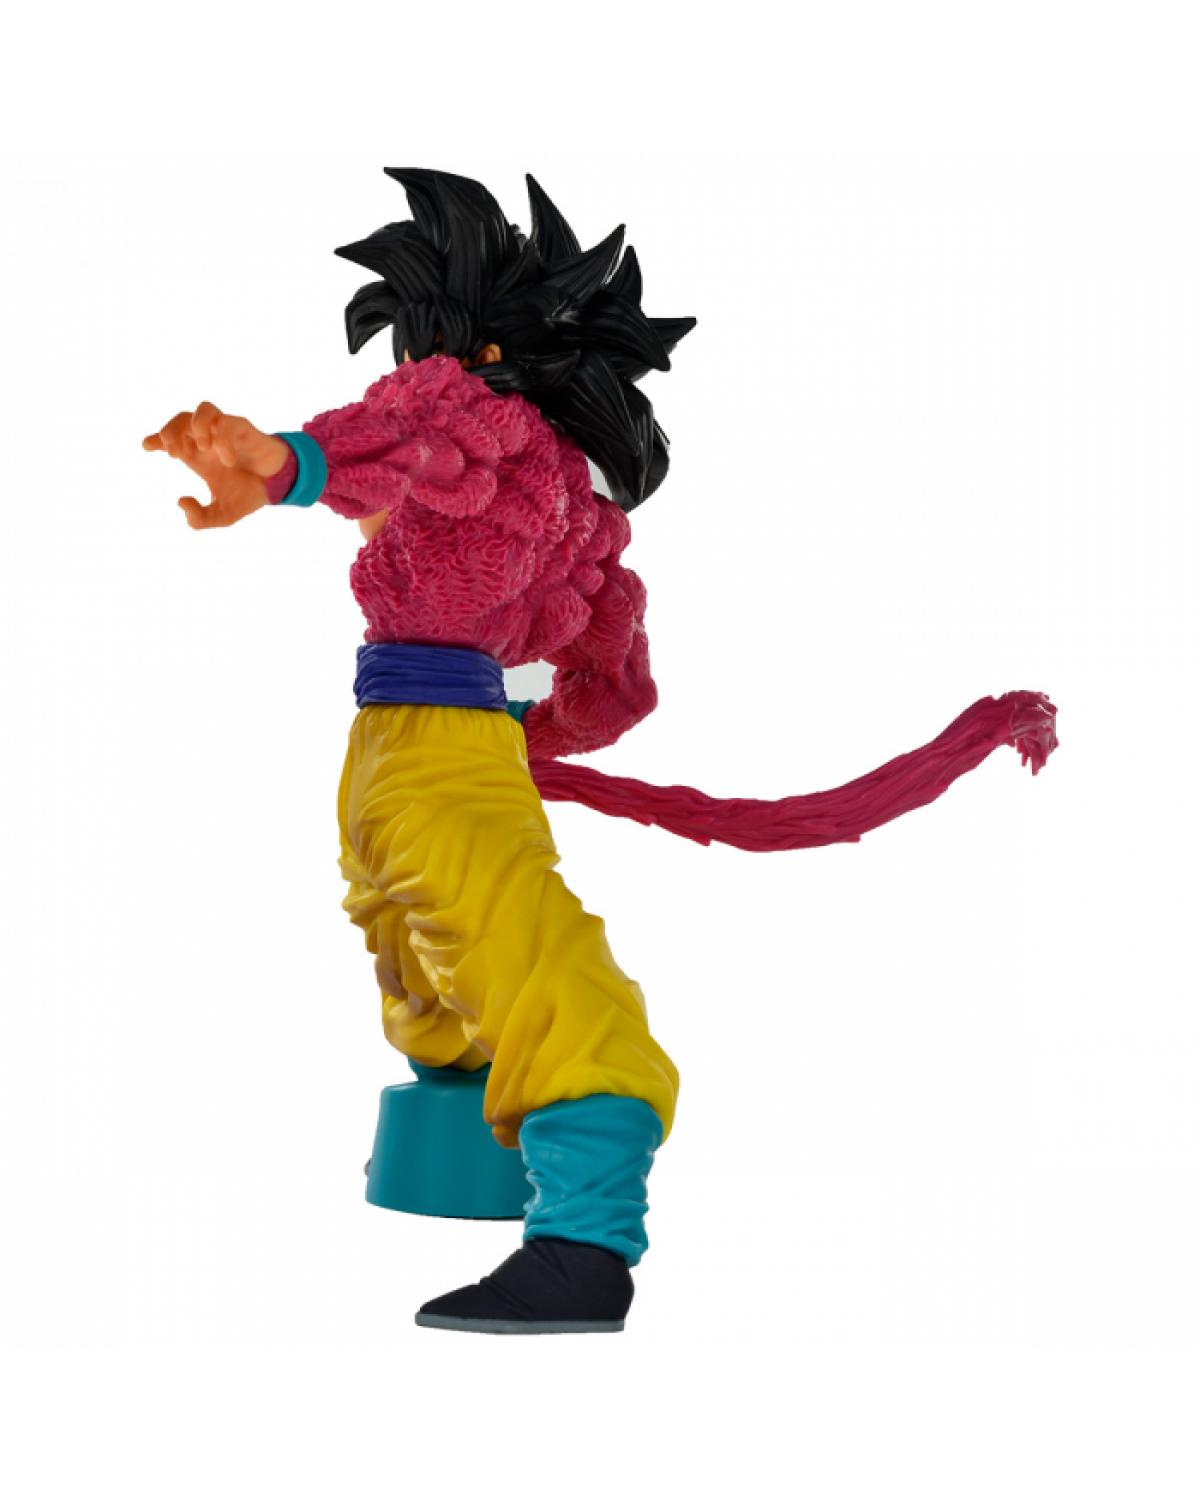 Goku Super Saiyajin 4 Feito Em Impressora 3d Action Figure